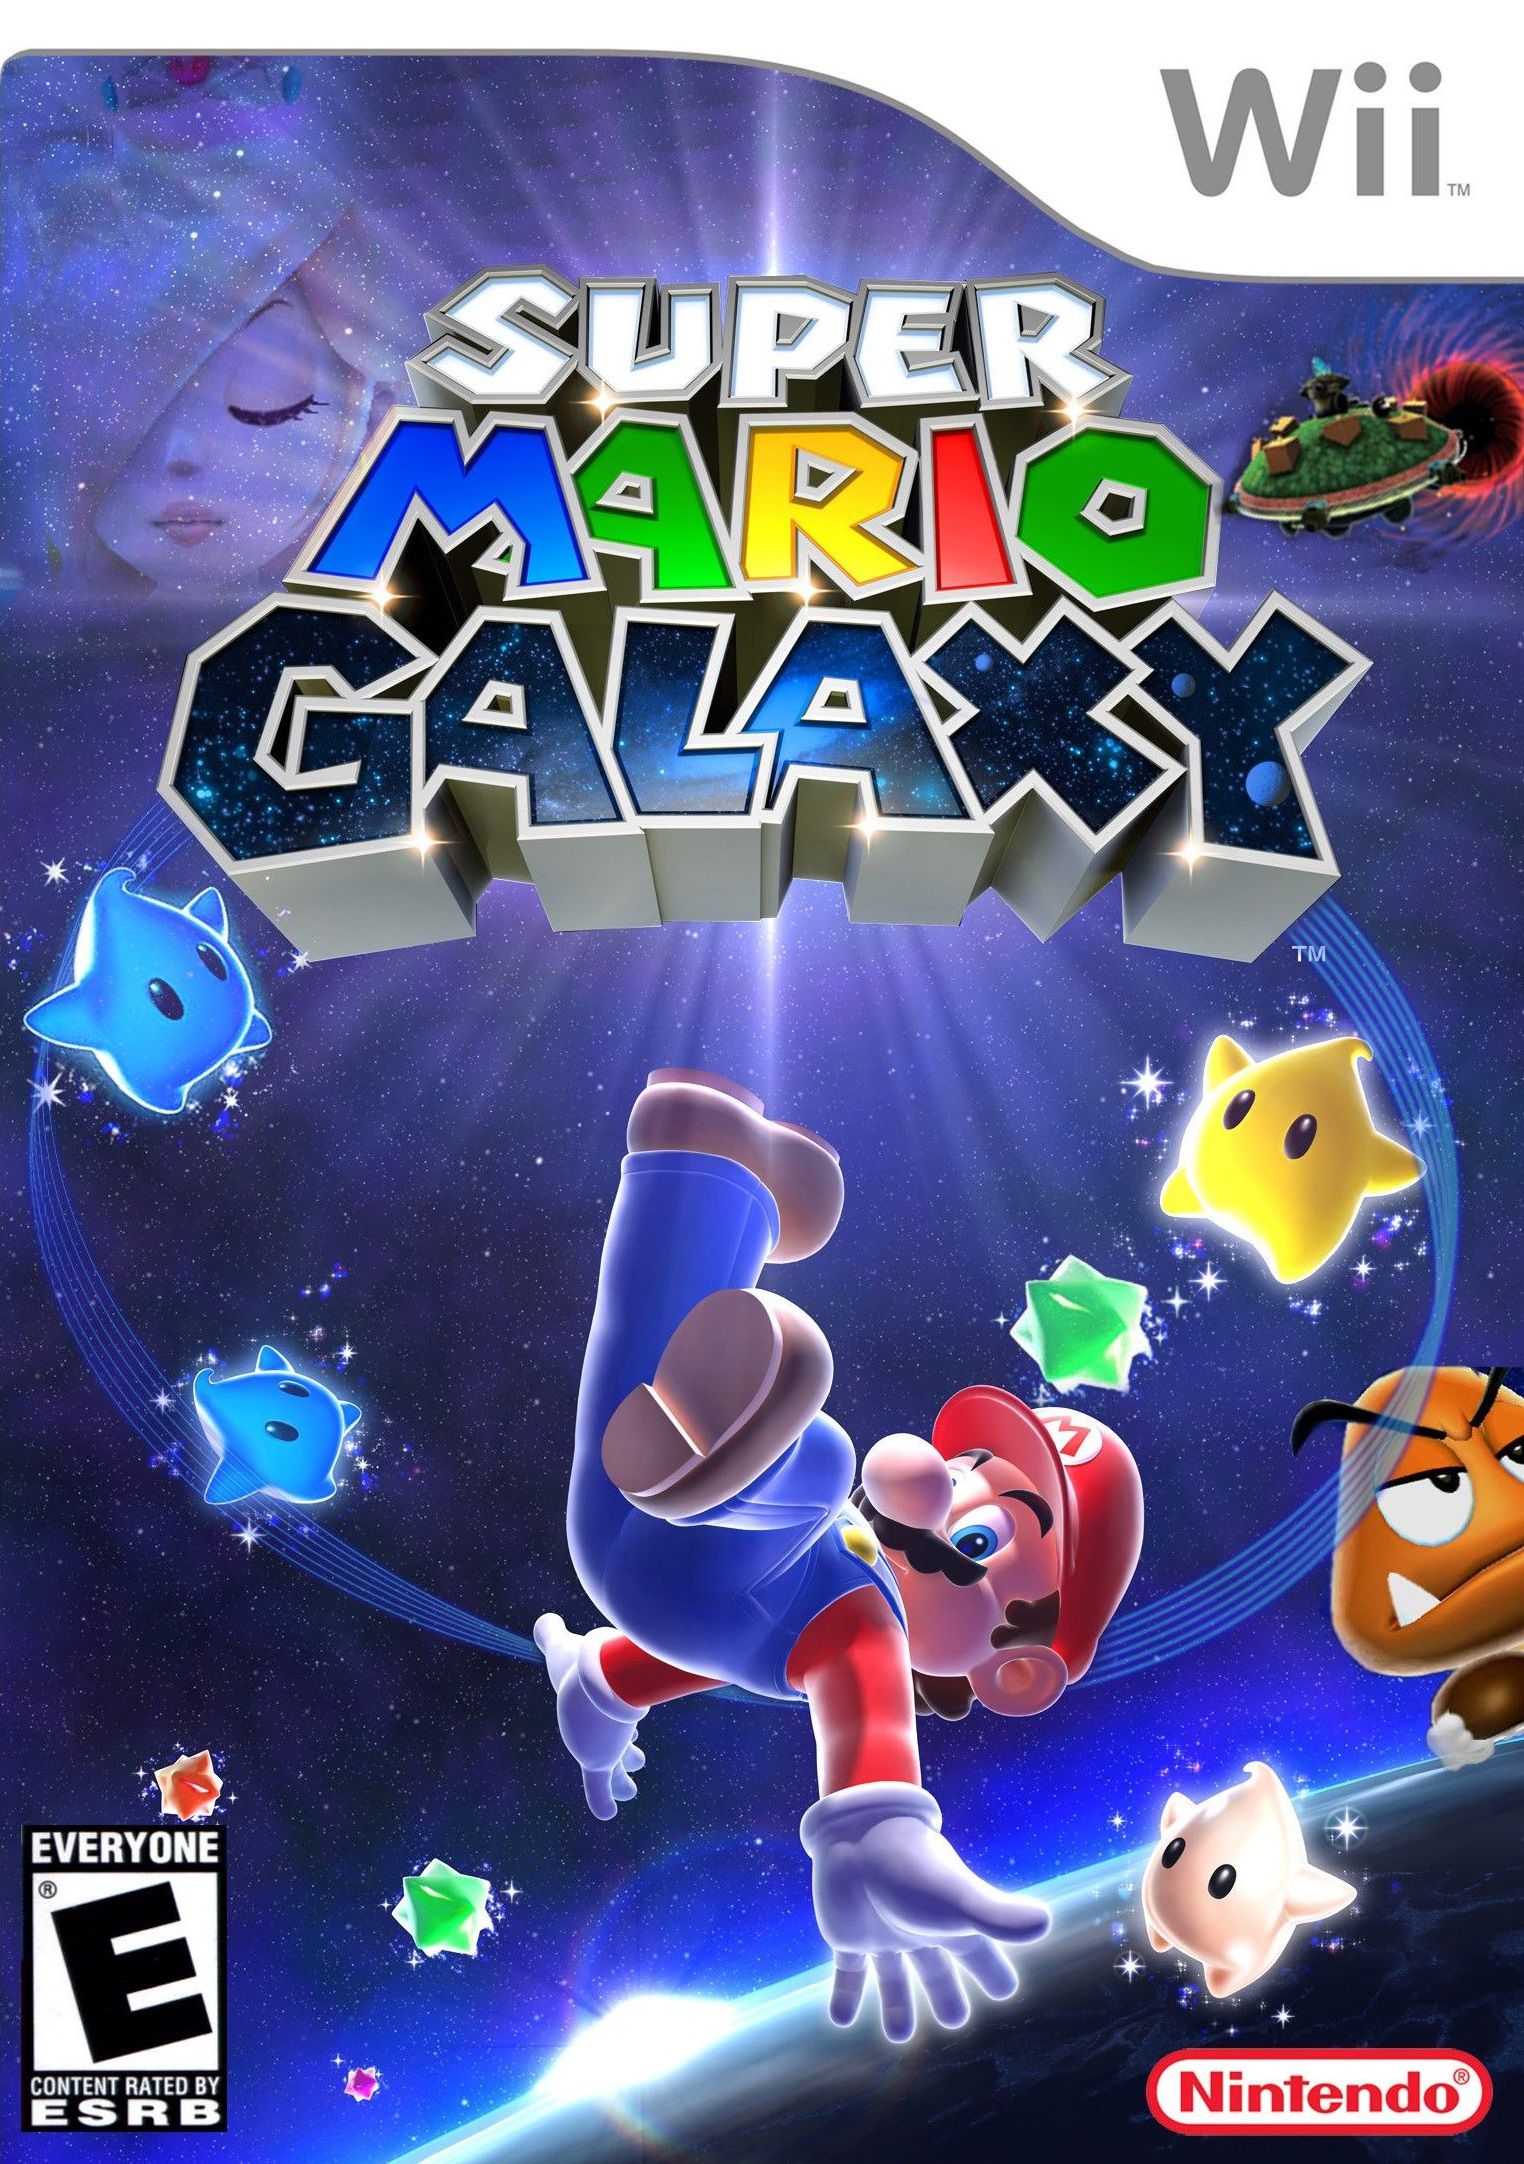 Usado: Jogo Super Mario Galaxy - Nintendo Wii em Promoção na